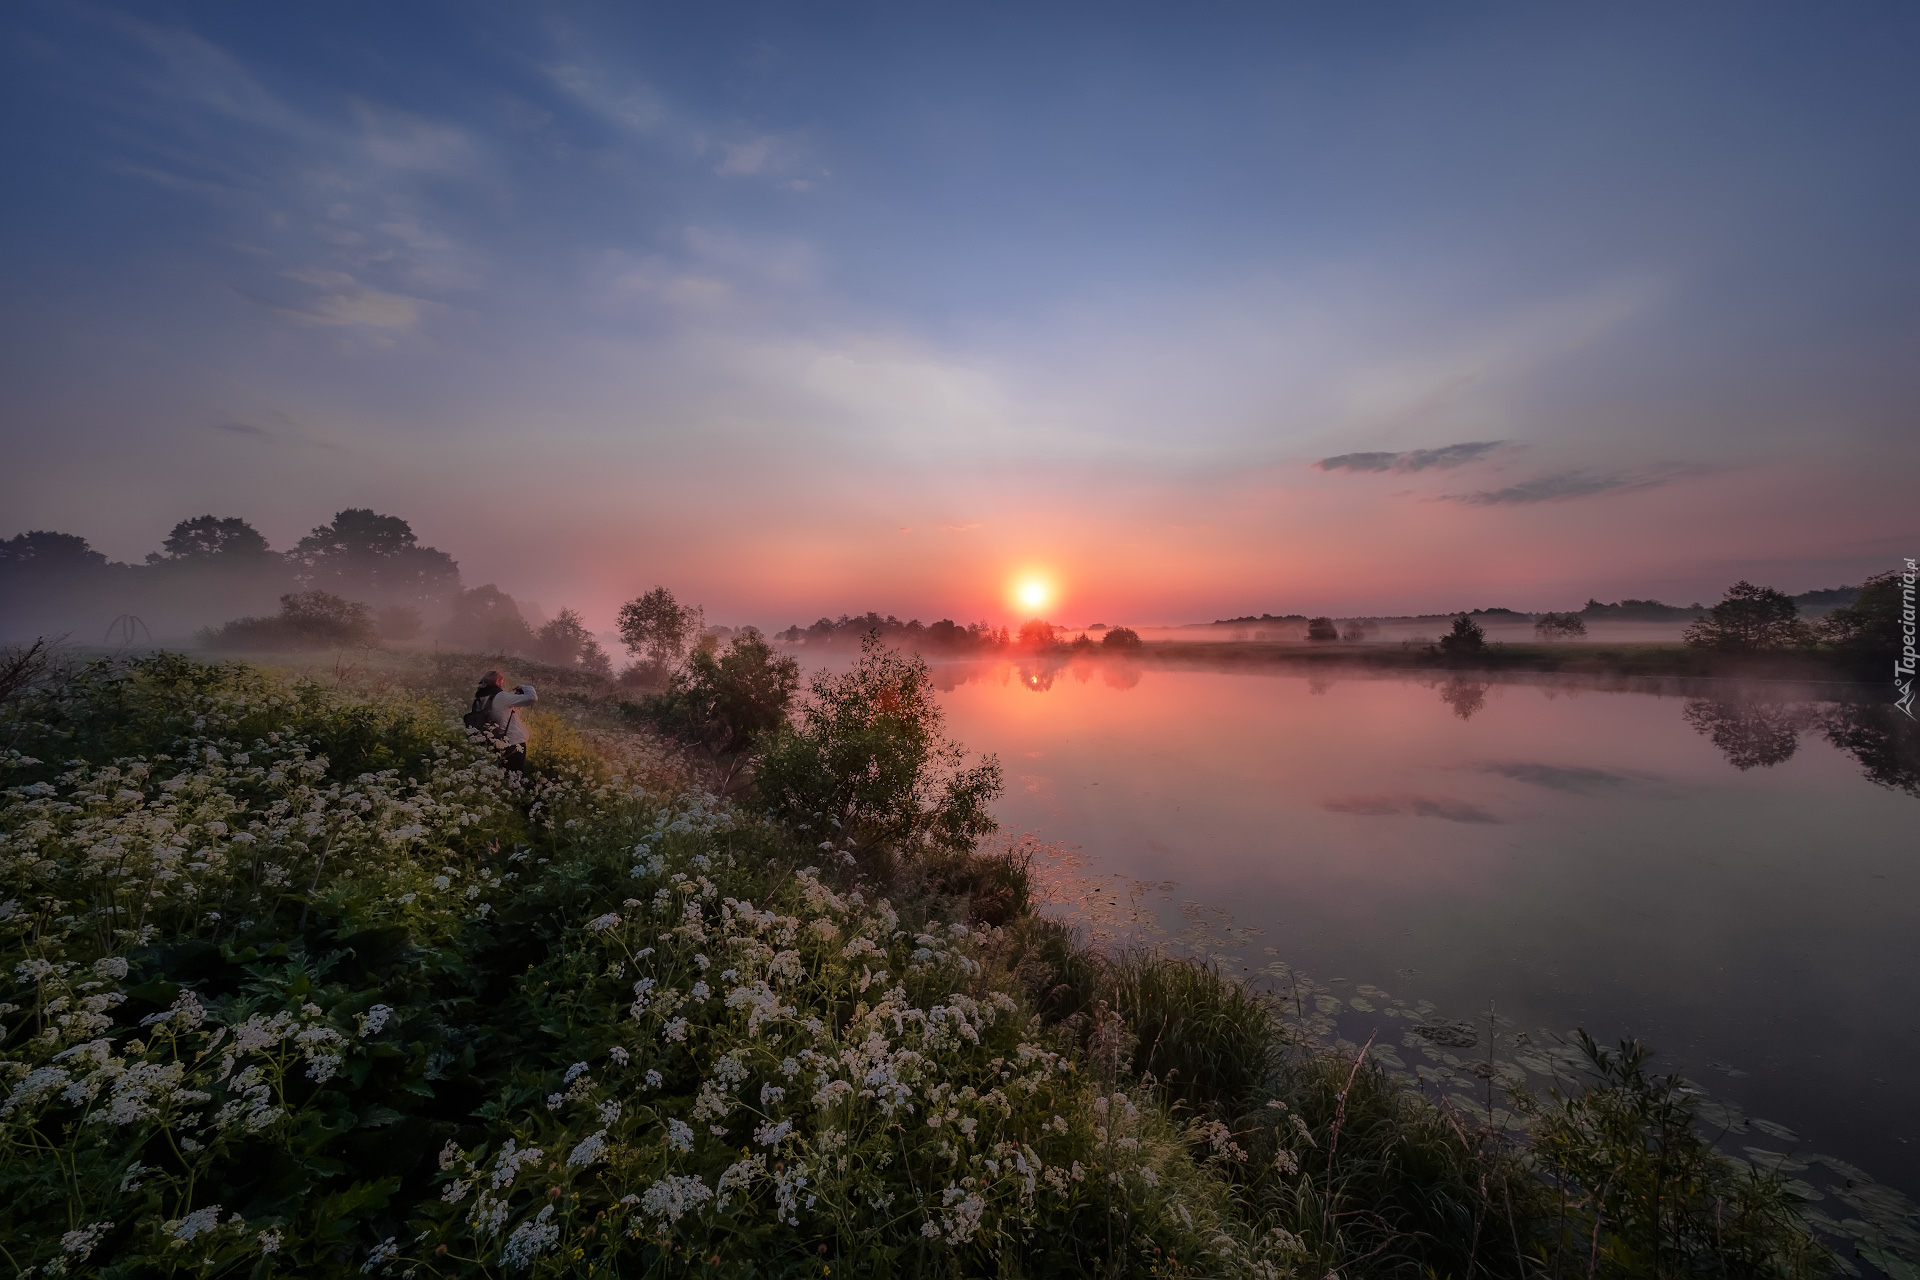 Rzeka Dubna, Drzewa, Kwiaty, Mgła, Wschód słońca, Łatgalia, Łotwa